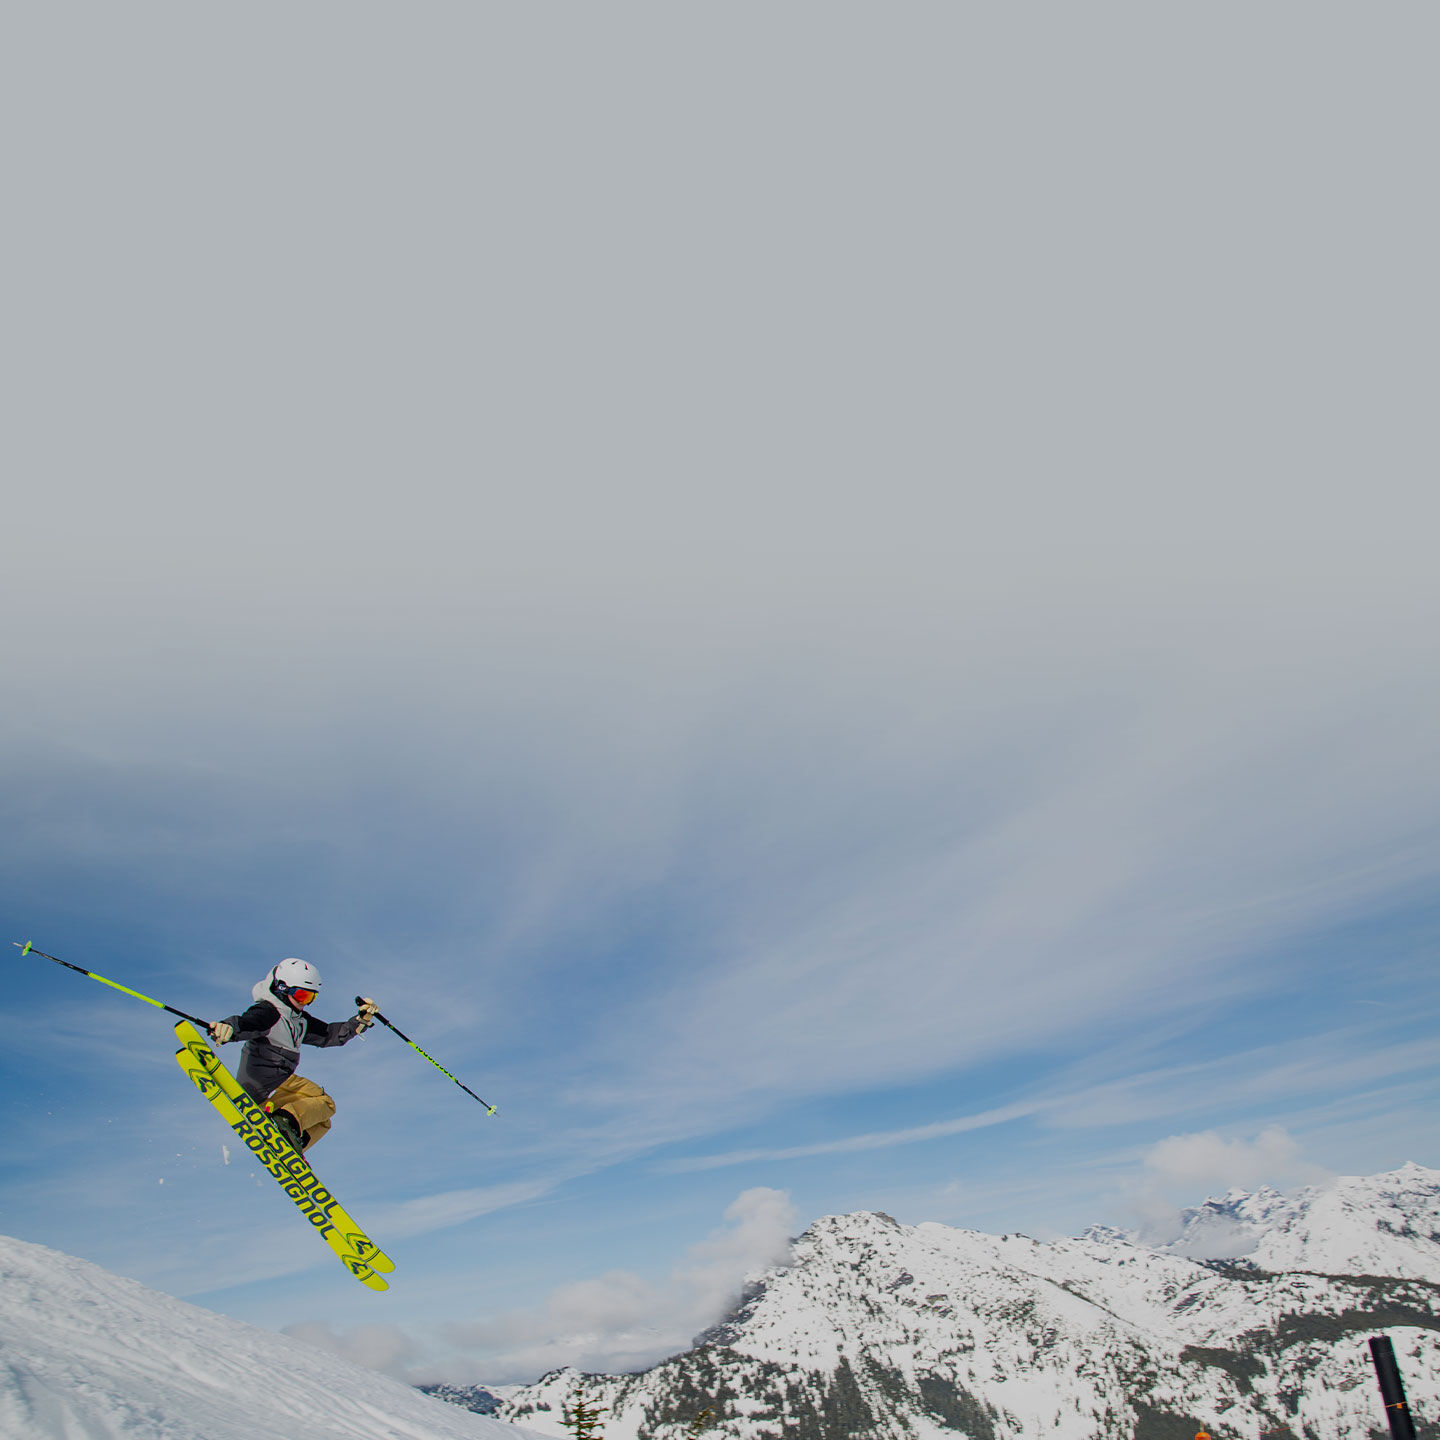 skier launching through the air off jump